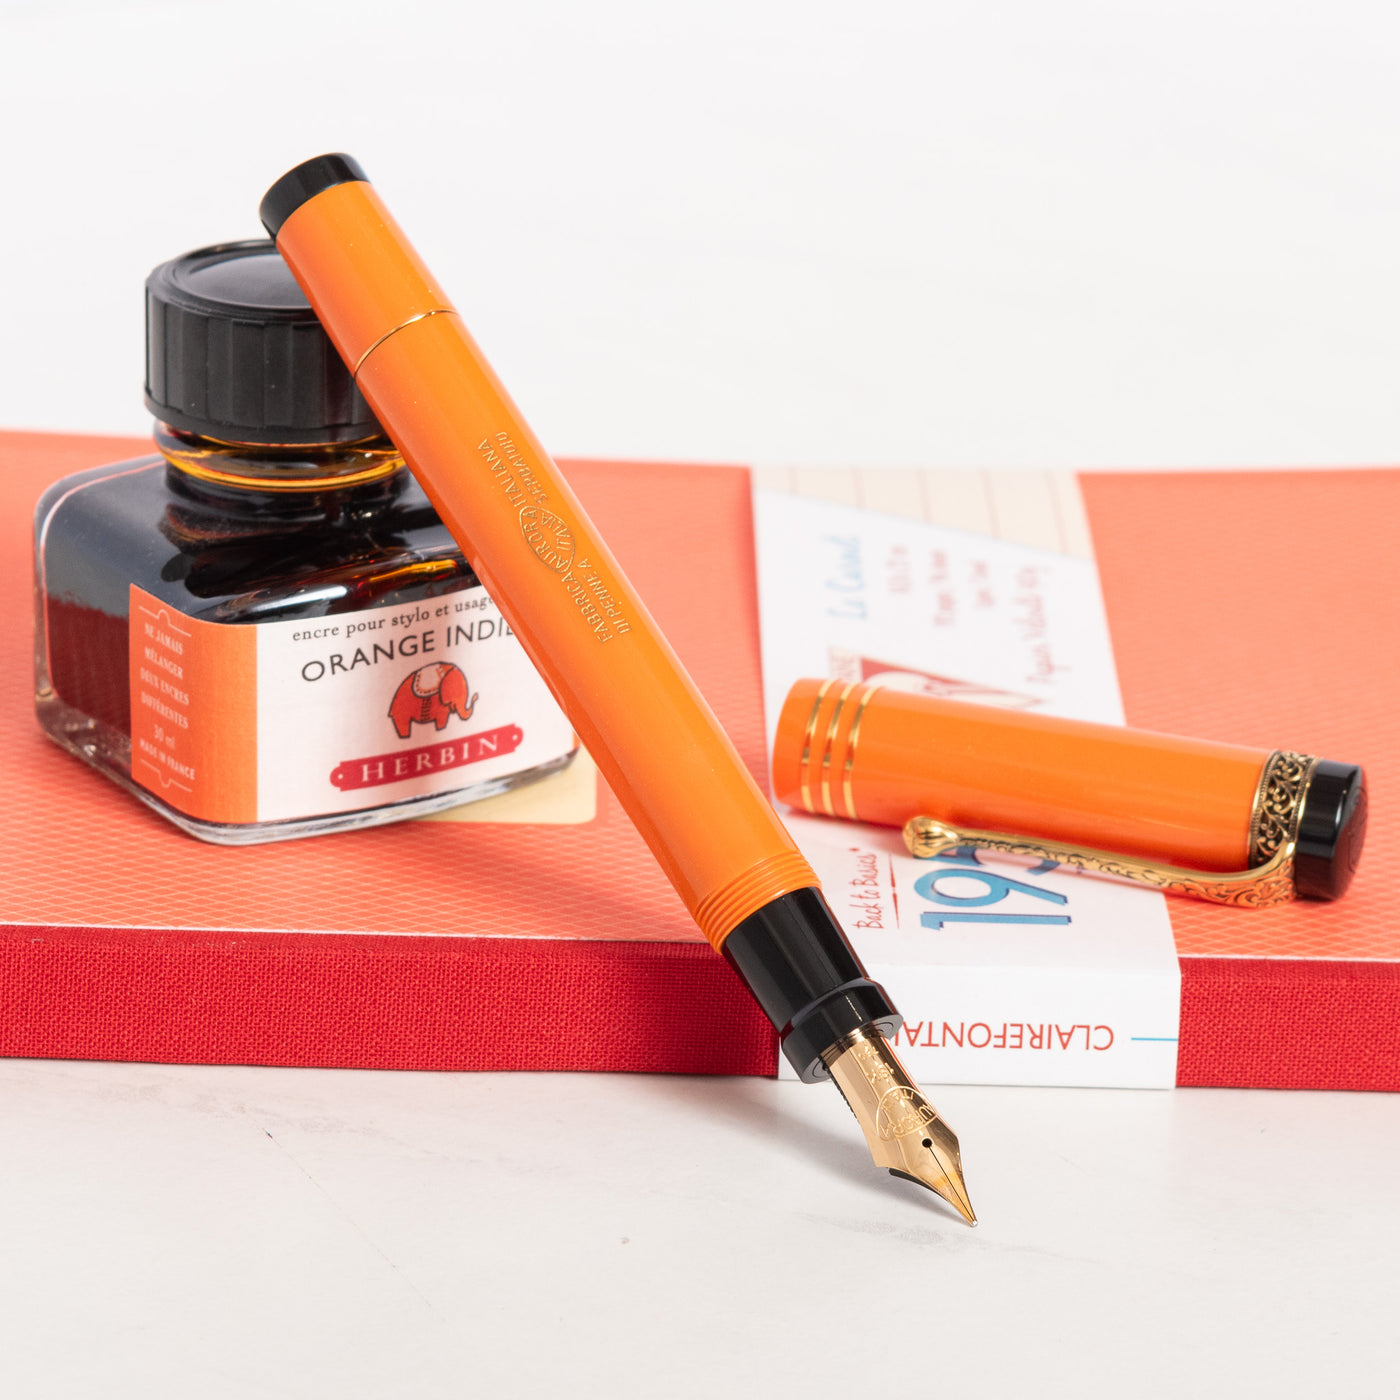 Aurora Internazionale Orange Limited Edition Fountain Pen uncapped